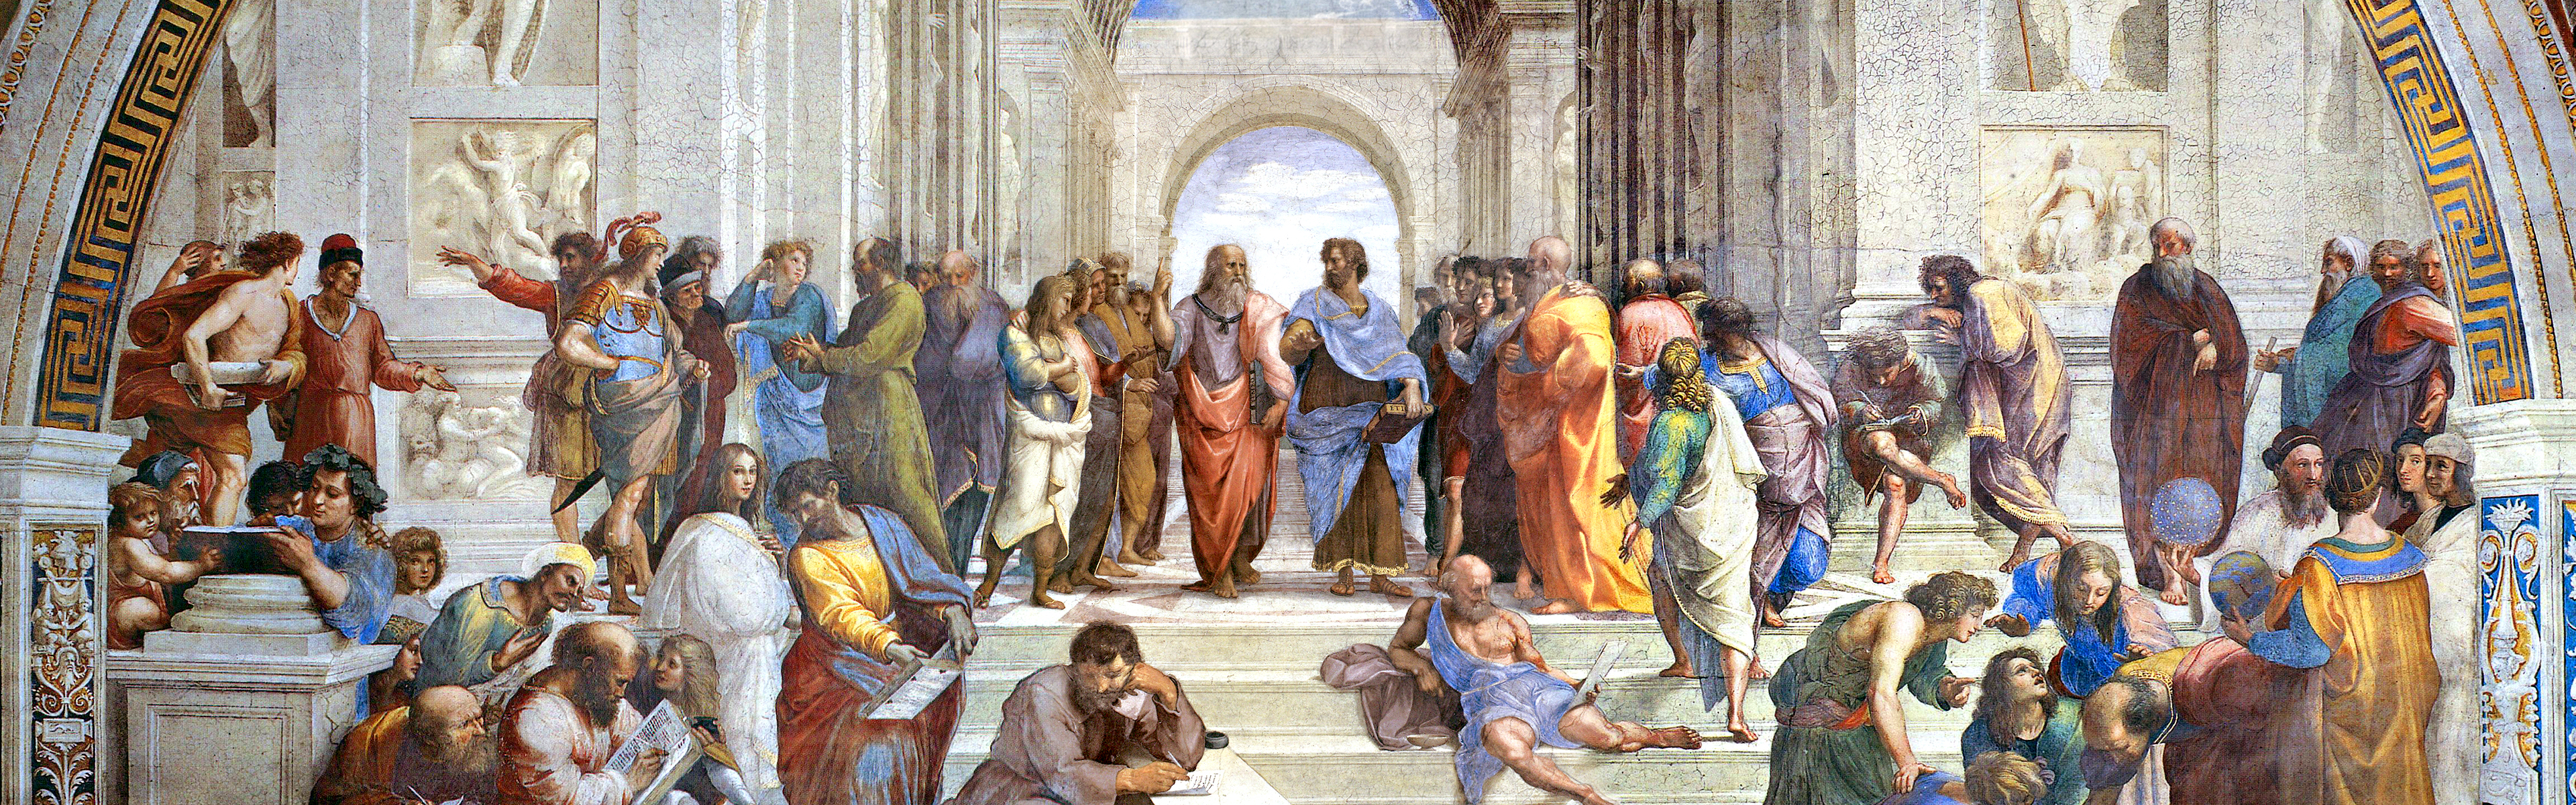 Socrates Aristotle The School Of Athens Philosophers Plato